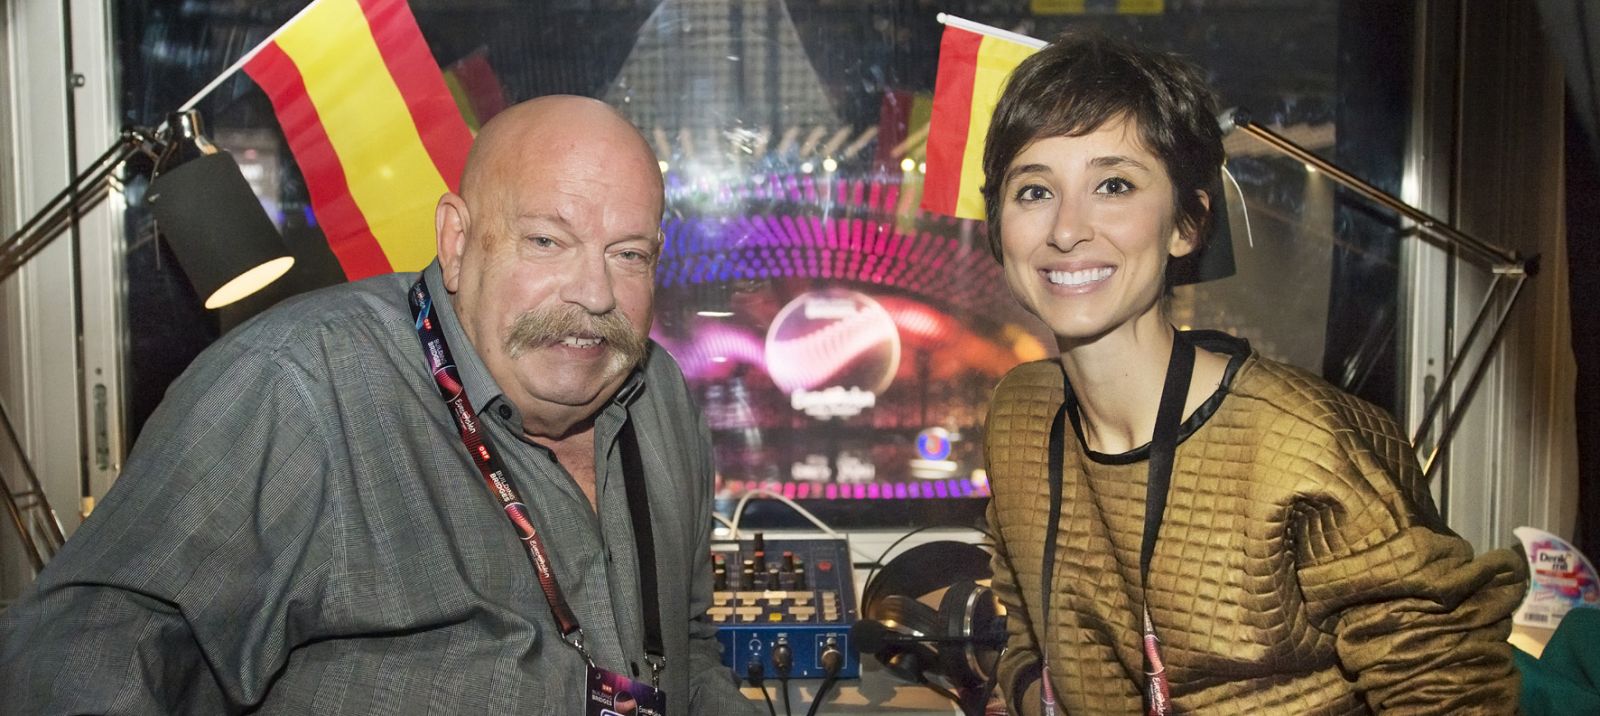 José María Íñigo y Julia Varela en la cabina de comentaristas en Eurovisión 2015